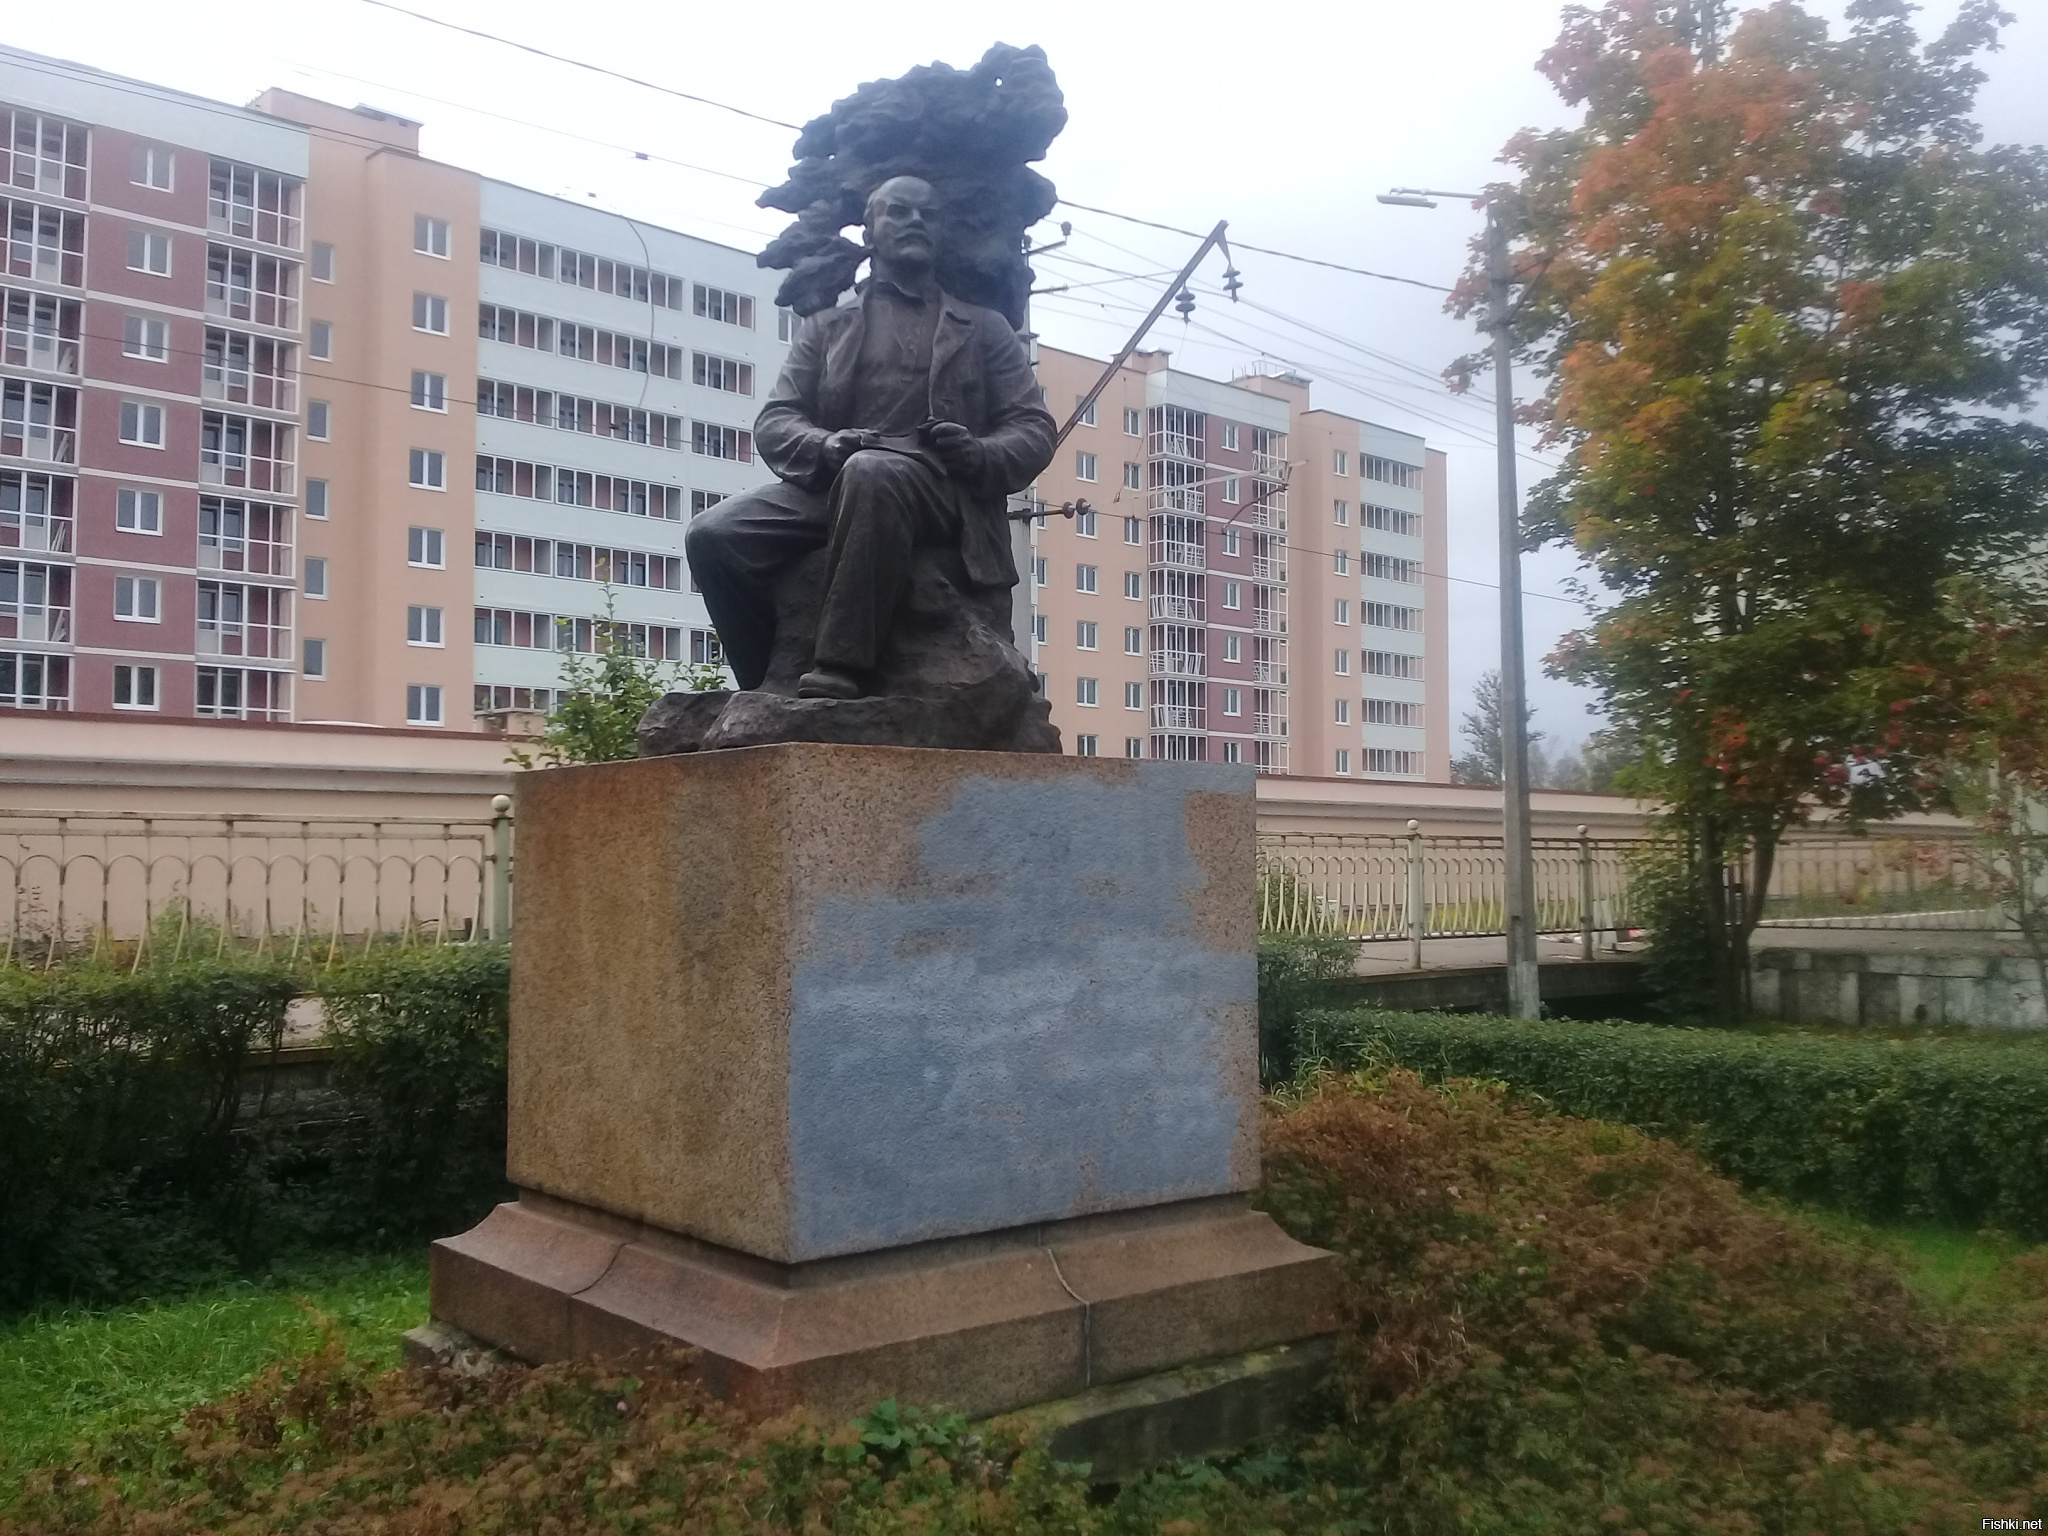 Несколько фото.
Ленин в Разливе.
Ленин на Украине.
Ленин в ГУЛАГе